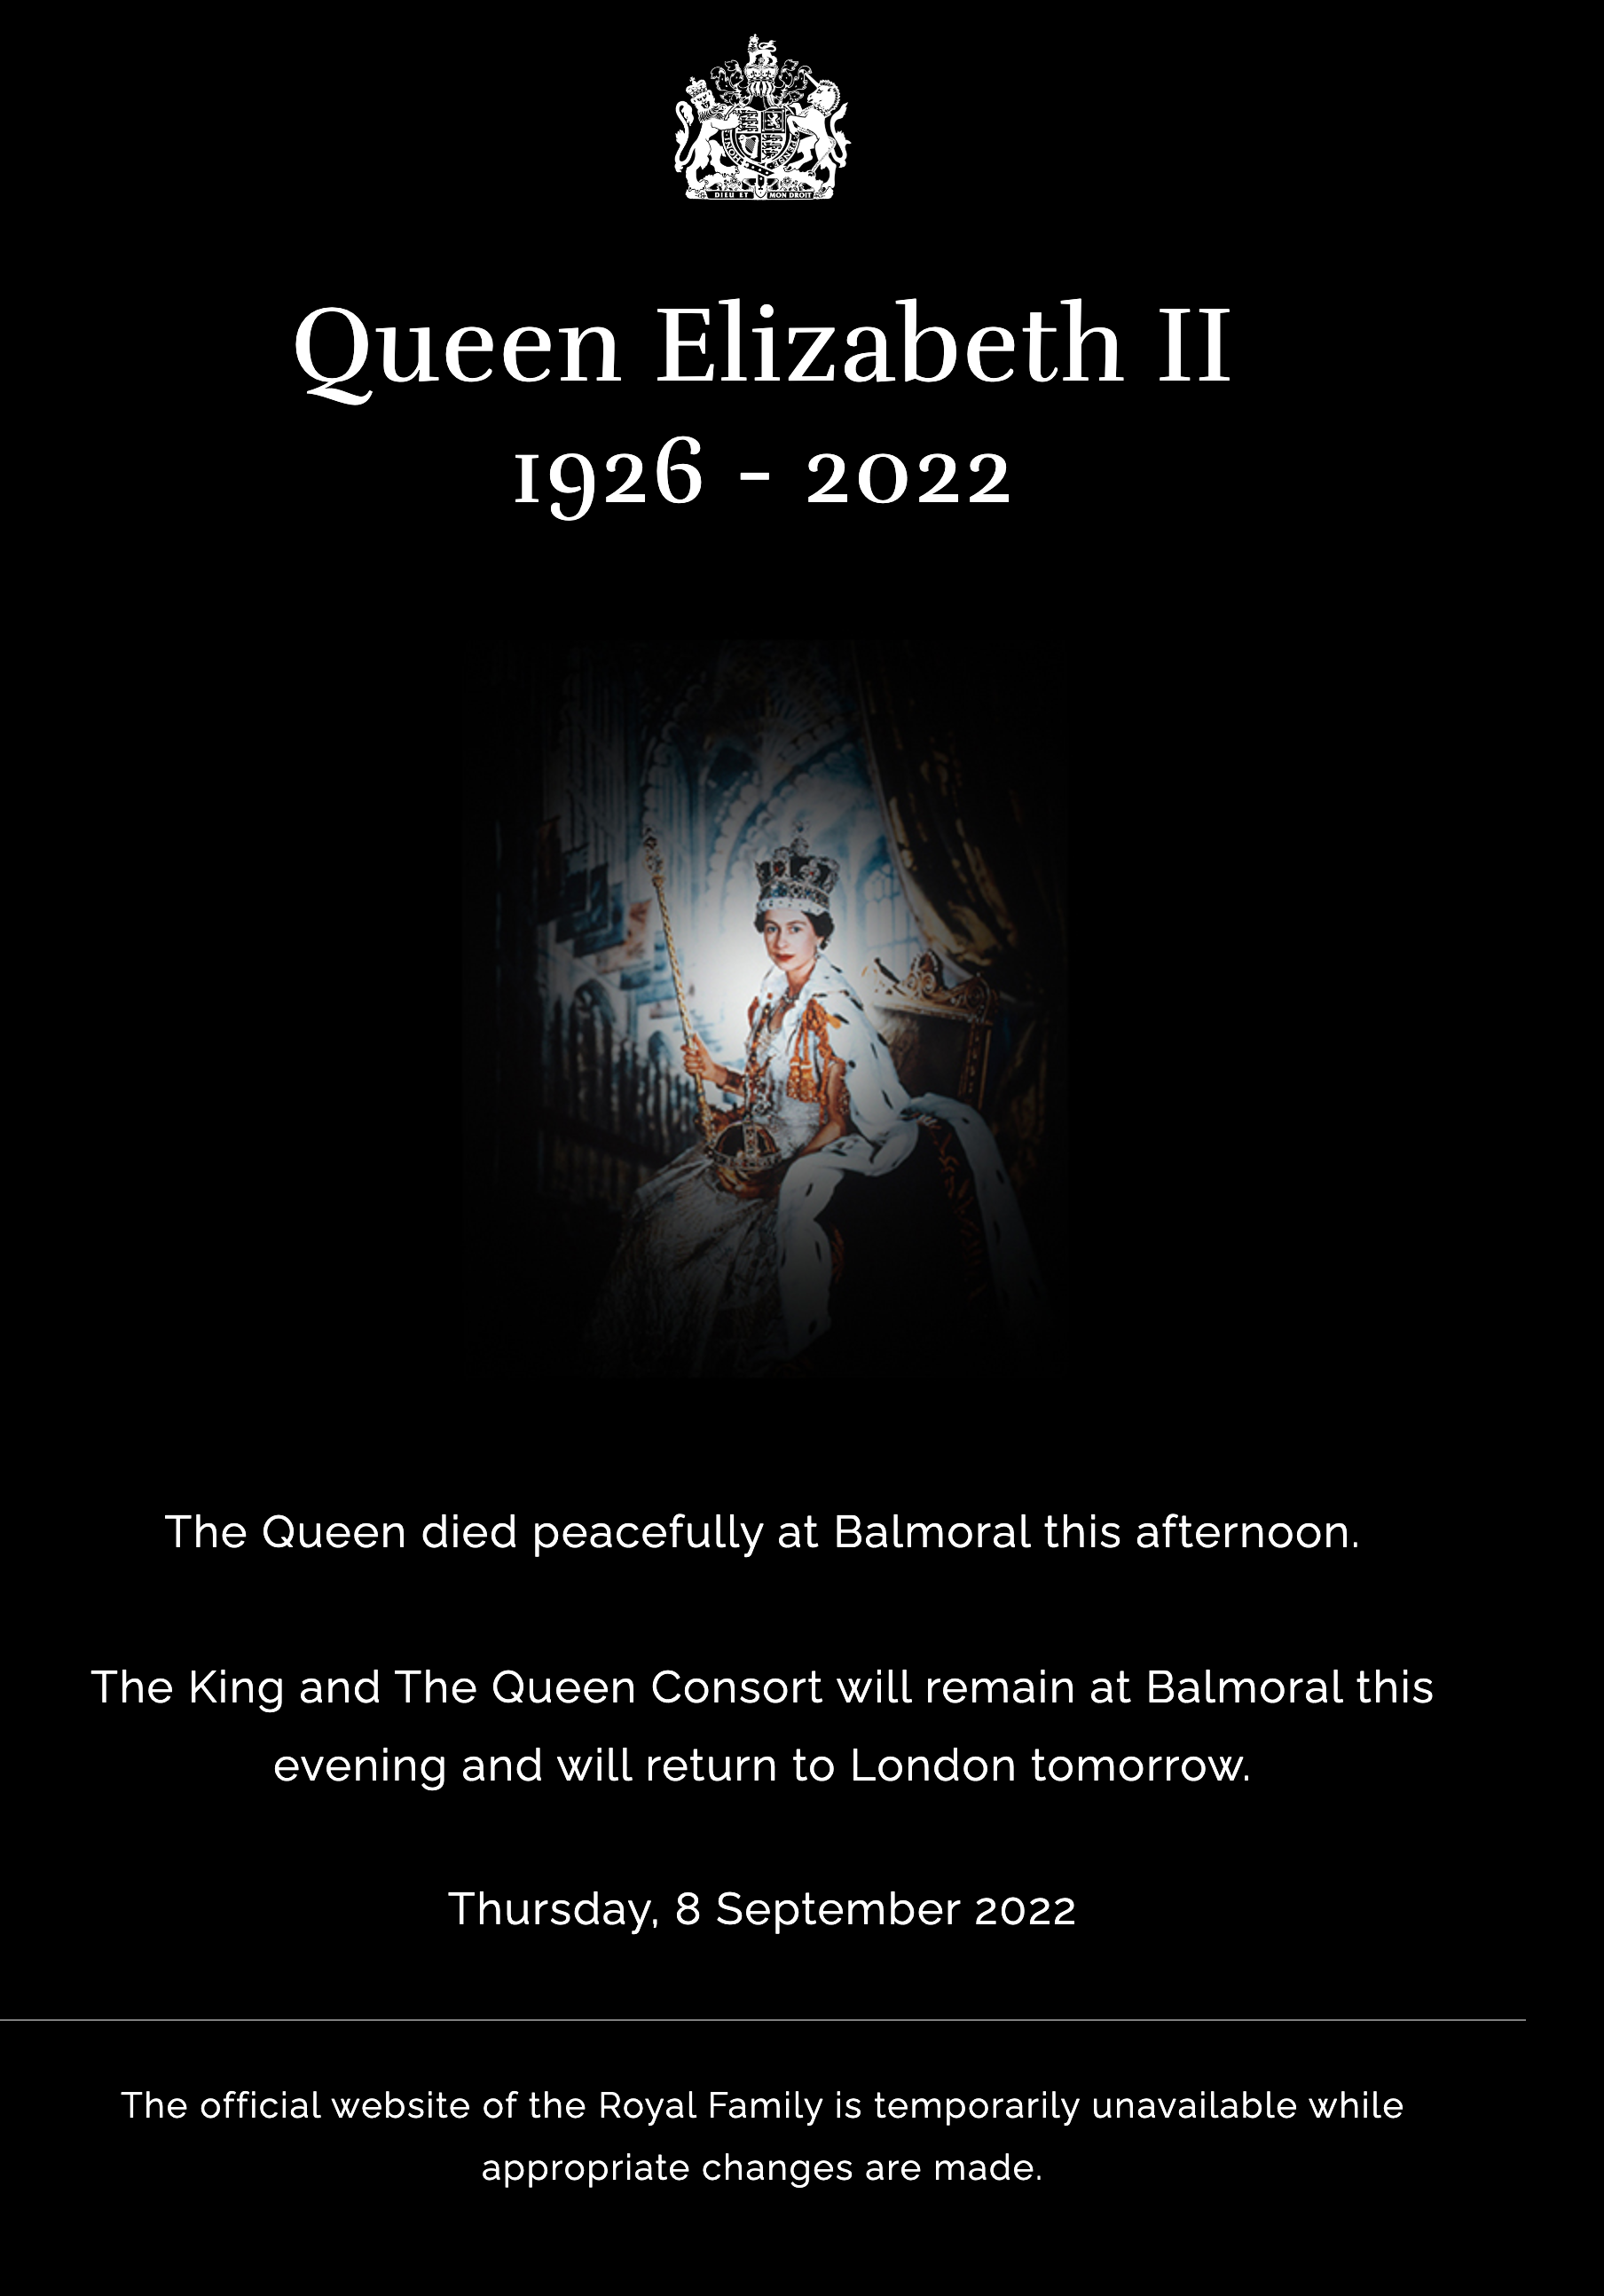 Сообщение о смерти Елизаветы II на сайте королевской семьи. Фото: royal.uk